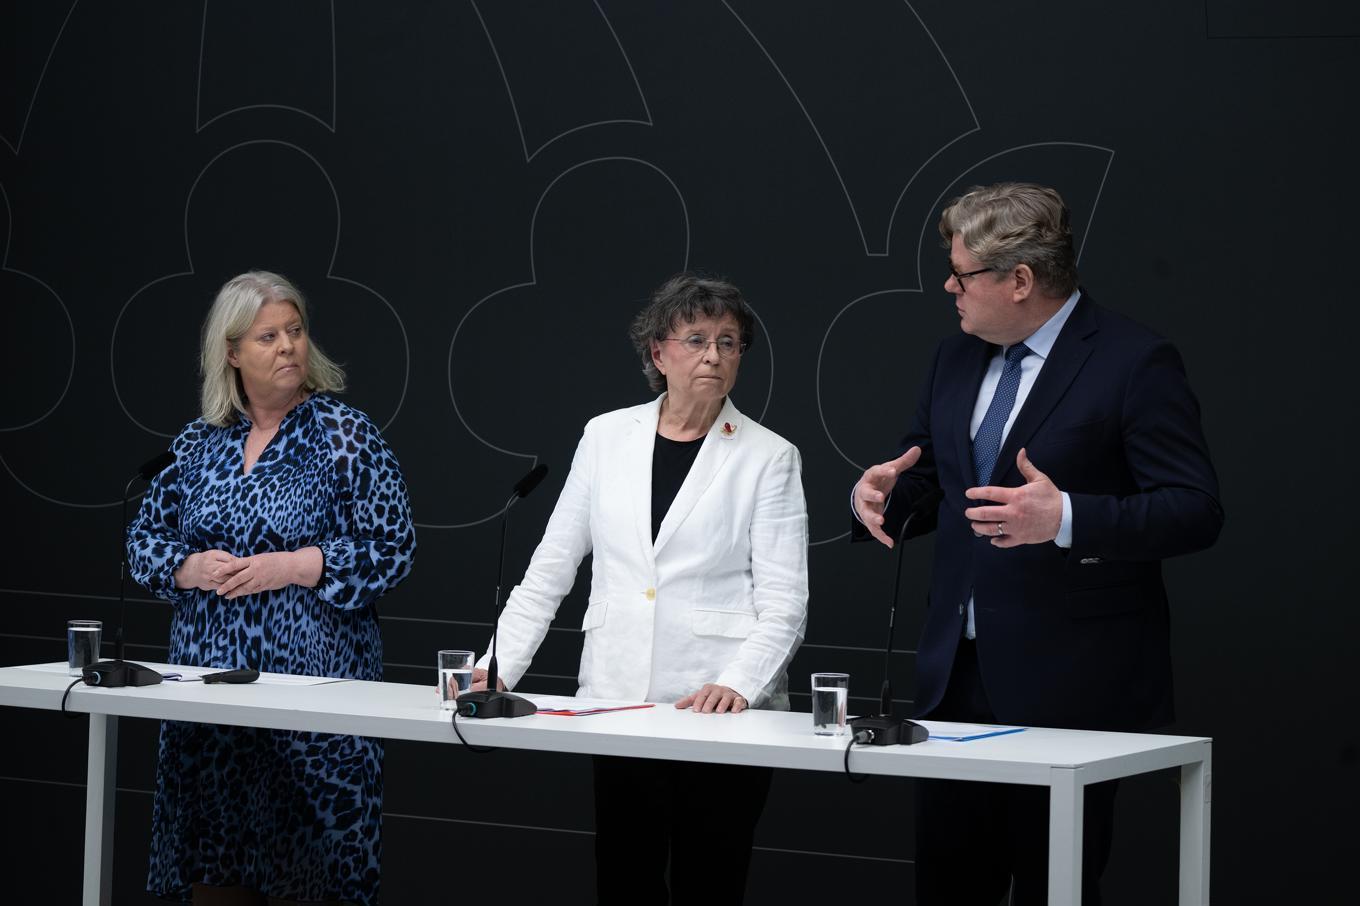 Camilla Waltersson Grönwall (M), socialtjänstminister,  Susanne Eberstein, utredare och Gunnar Strömmer (M), justitieminister. Foto: Roger Sahlström.